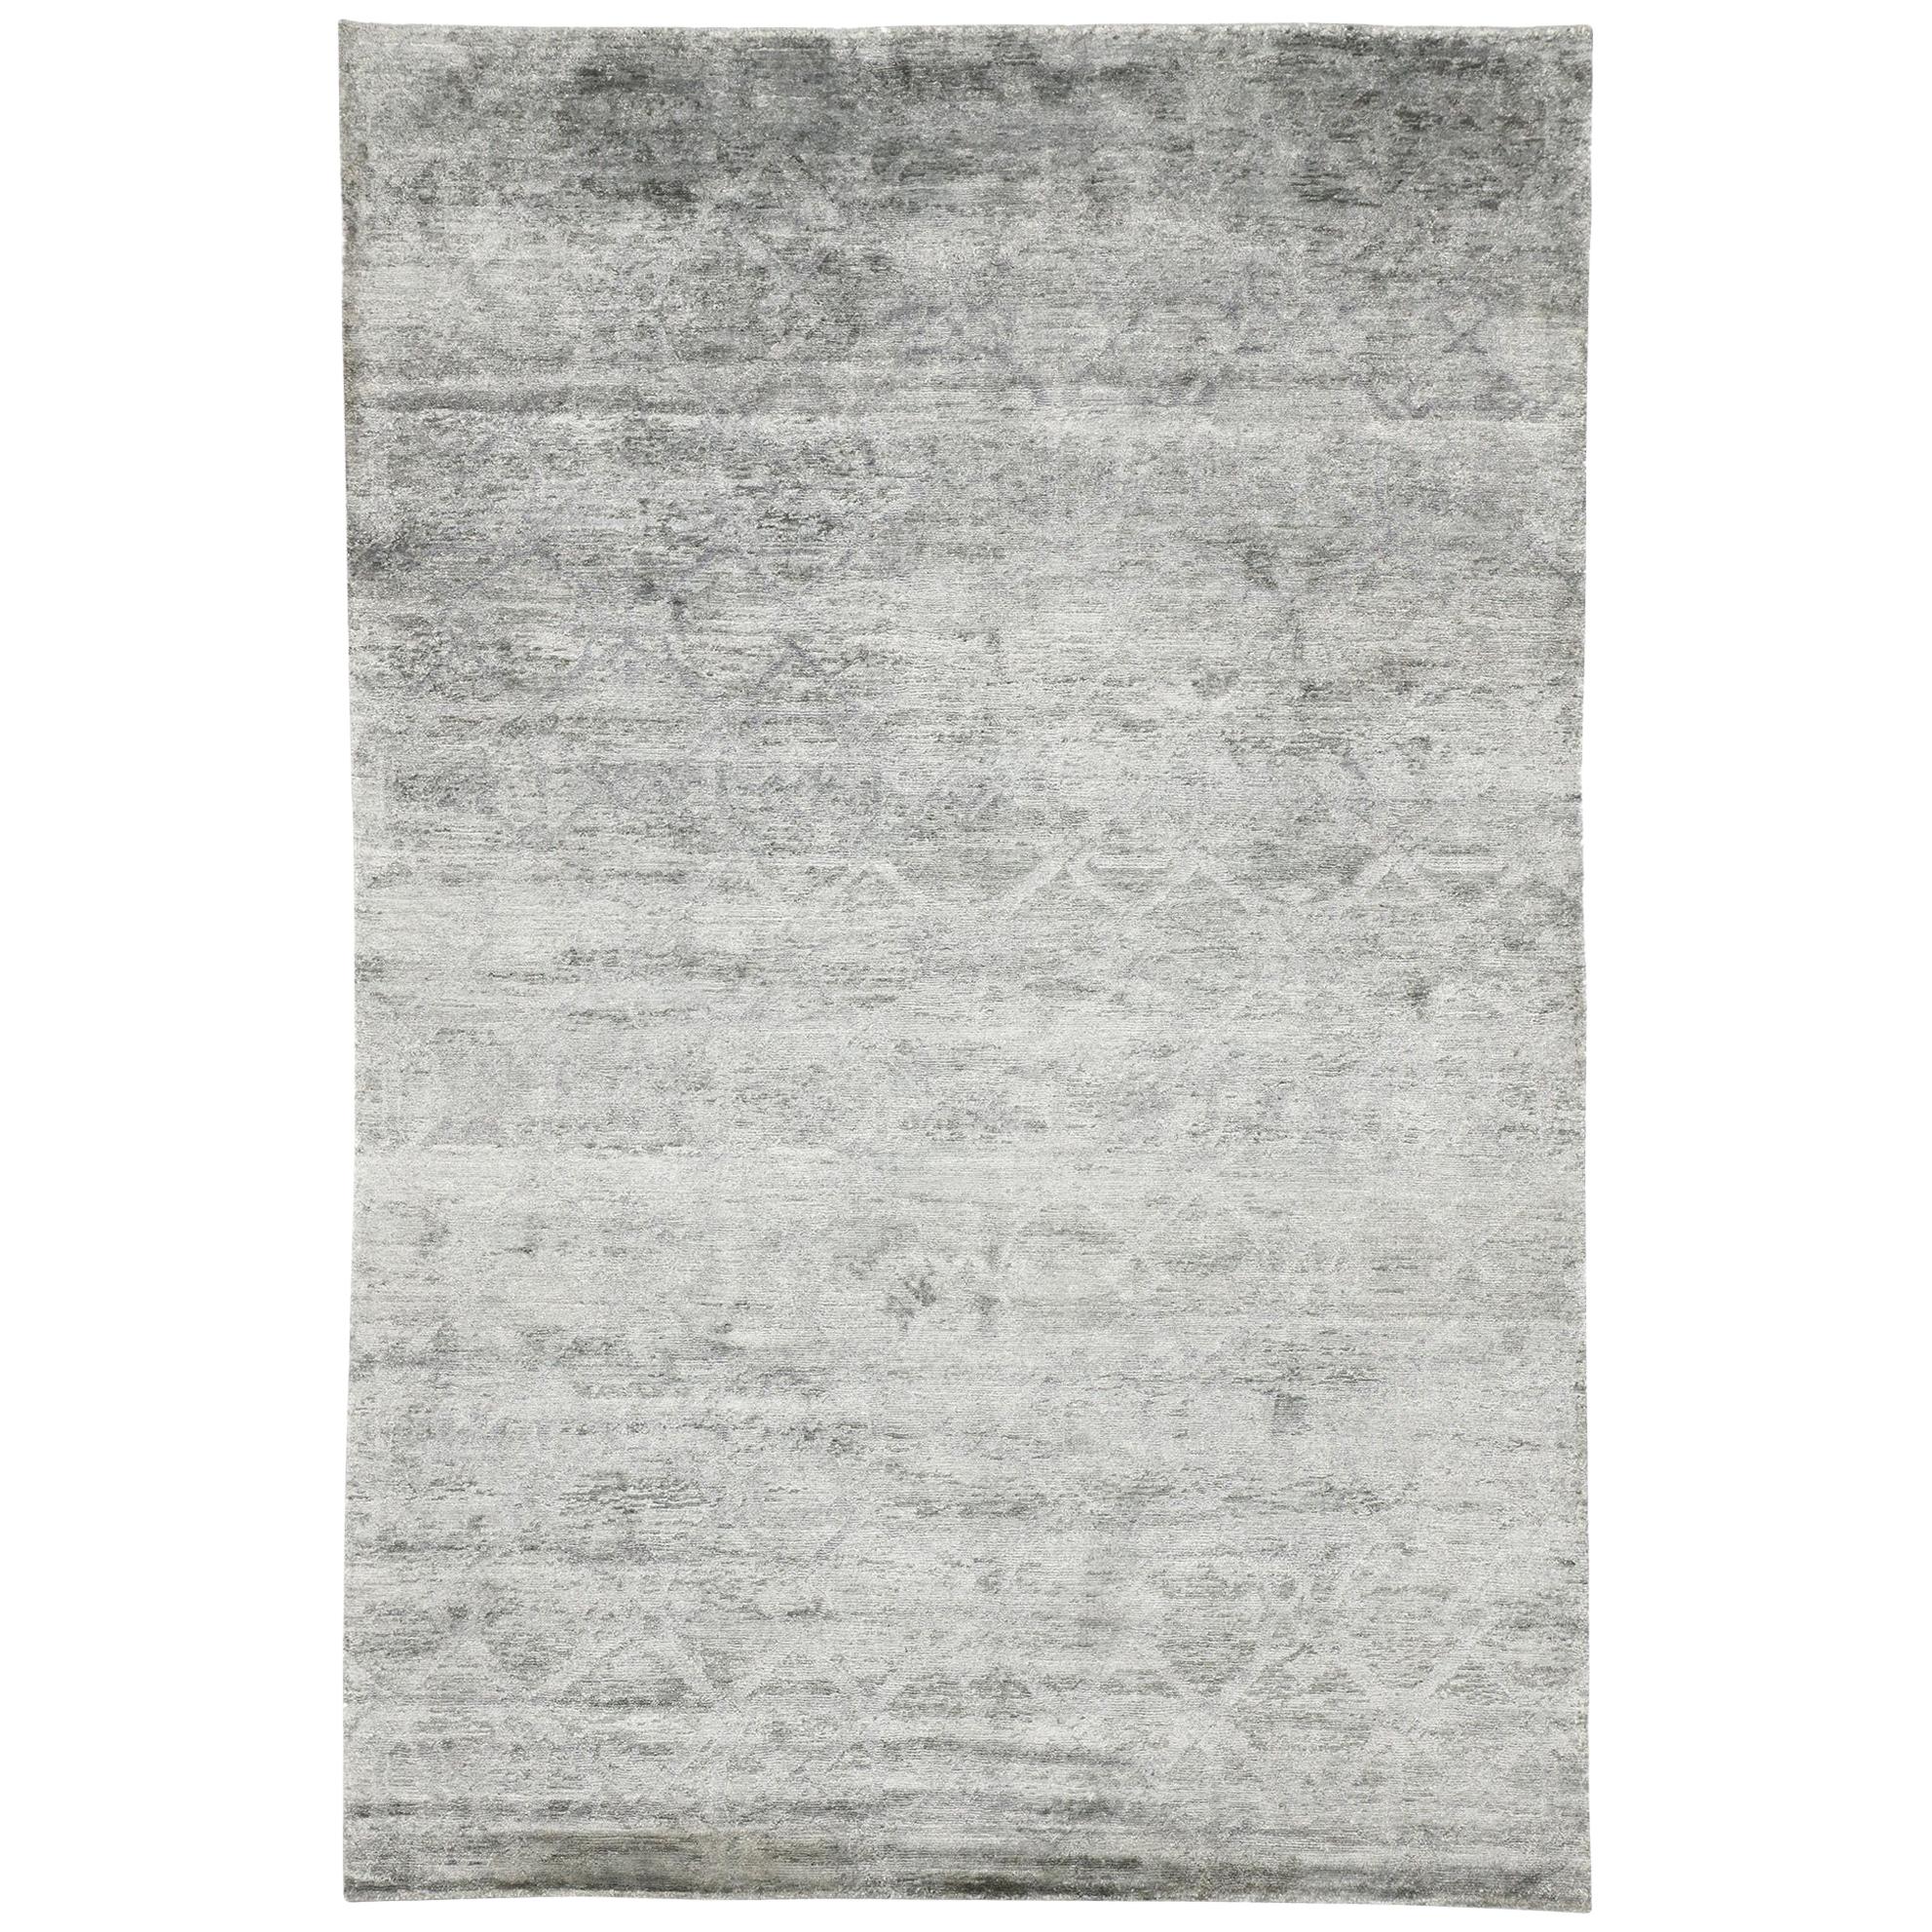 Zeitgenössischer grauer Teppich mit skandinavischem, modernem und modernem skandinavischem Stil